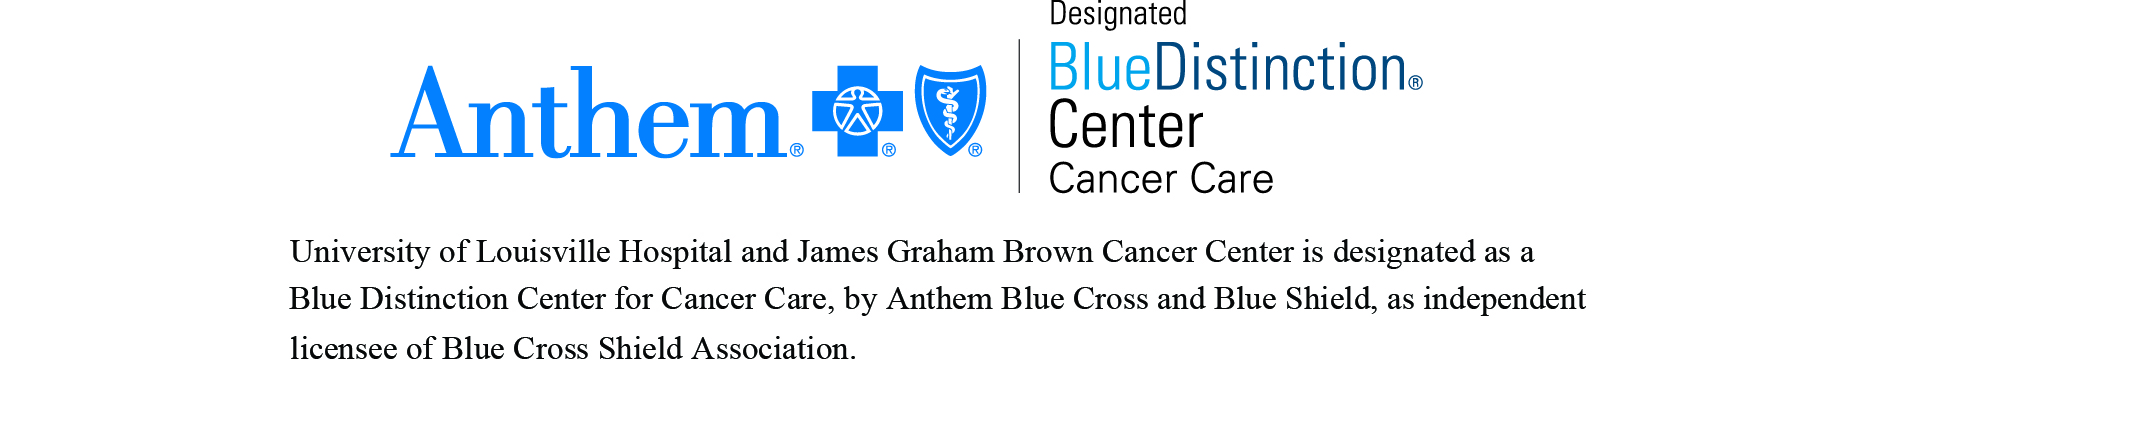 Anthem Blue Distinction Center for Cancer Care